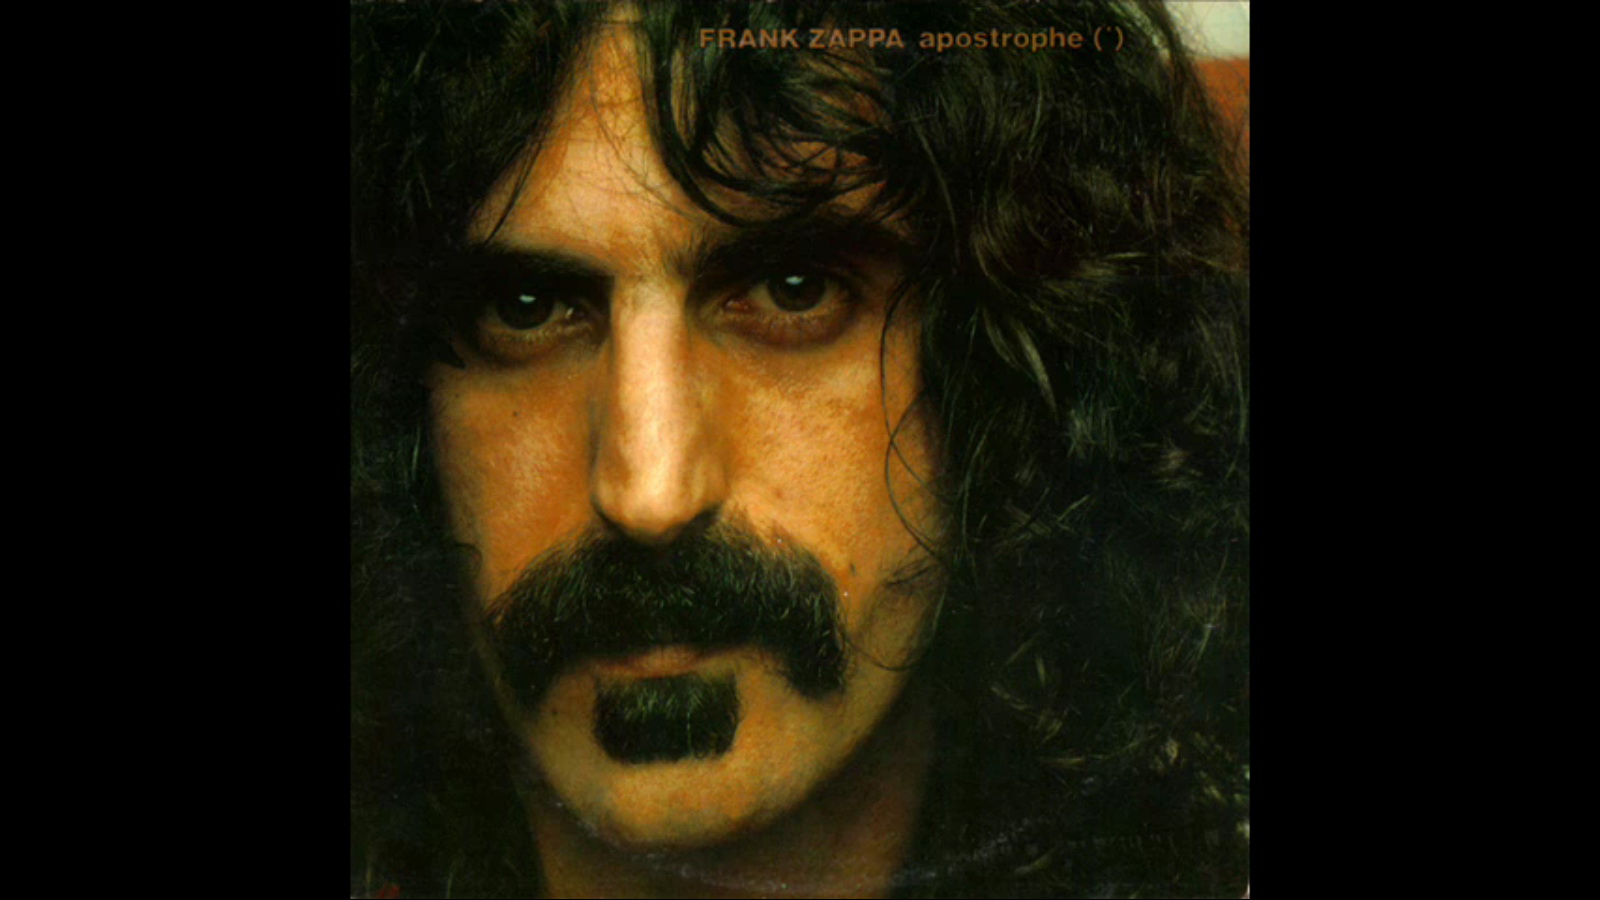 Rendeződik Frank Zappa  hagyatéka?